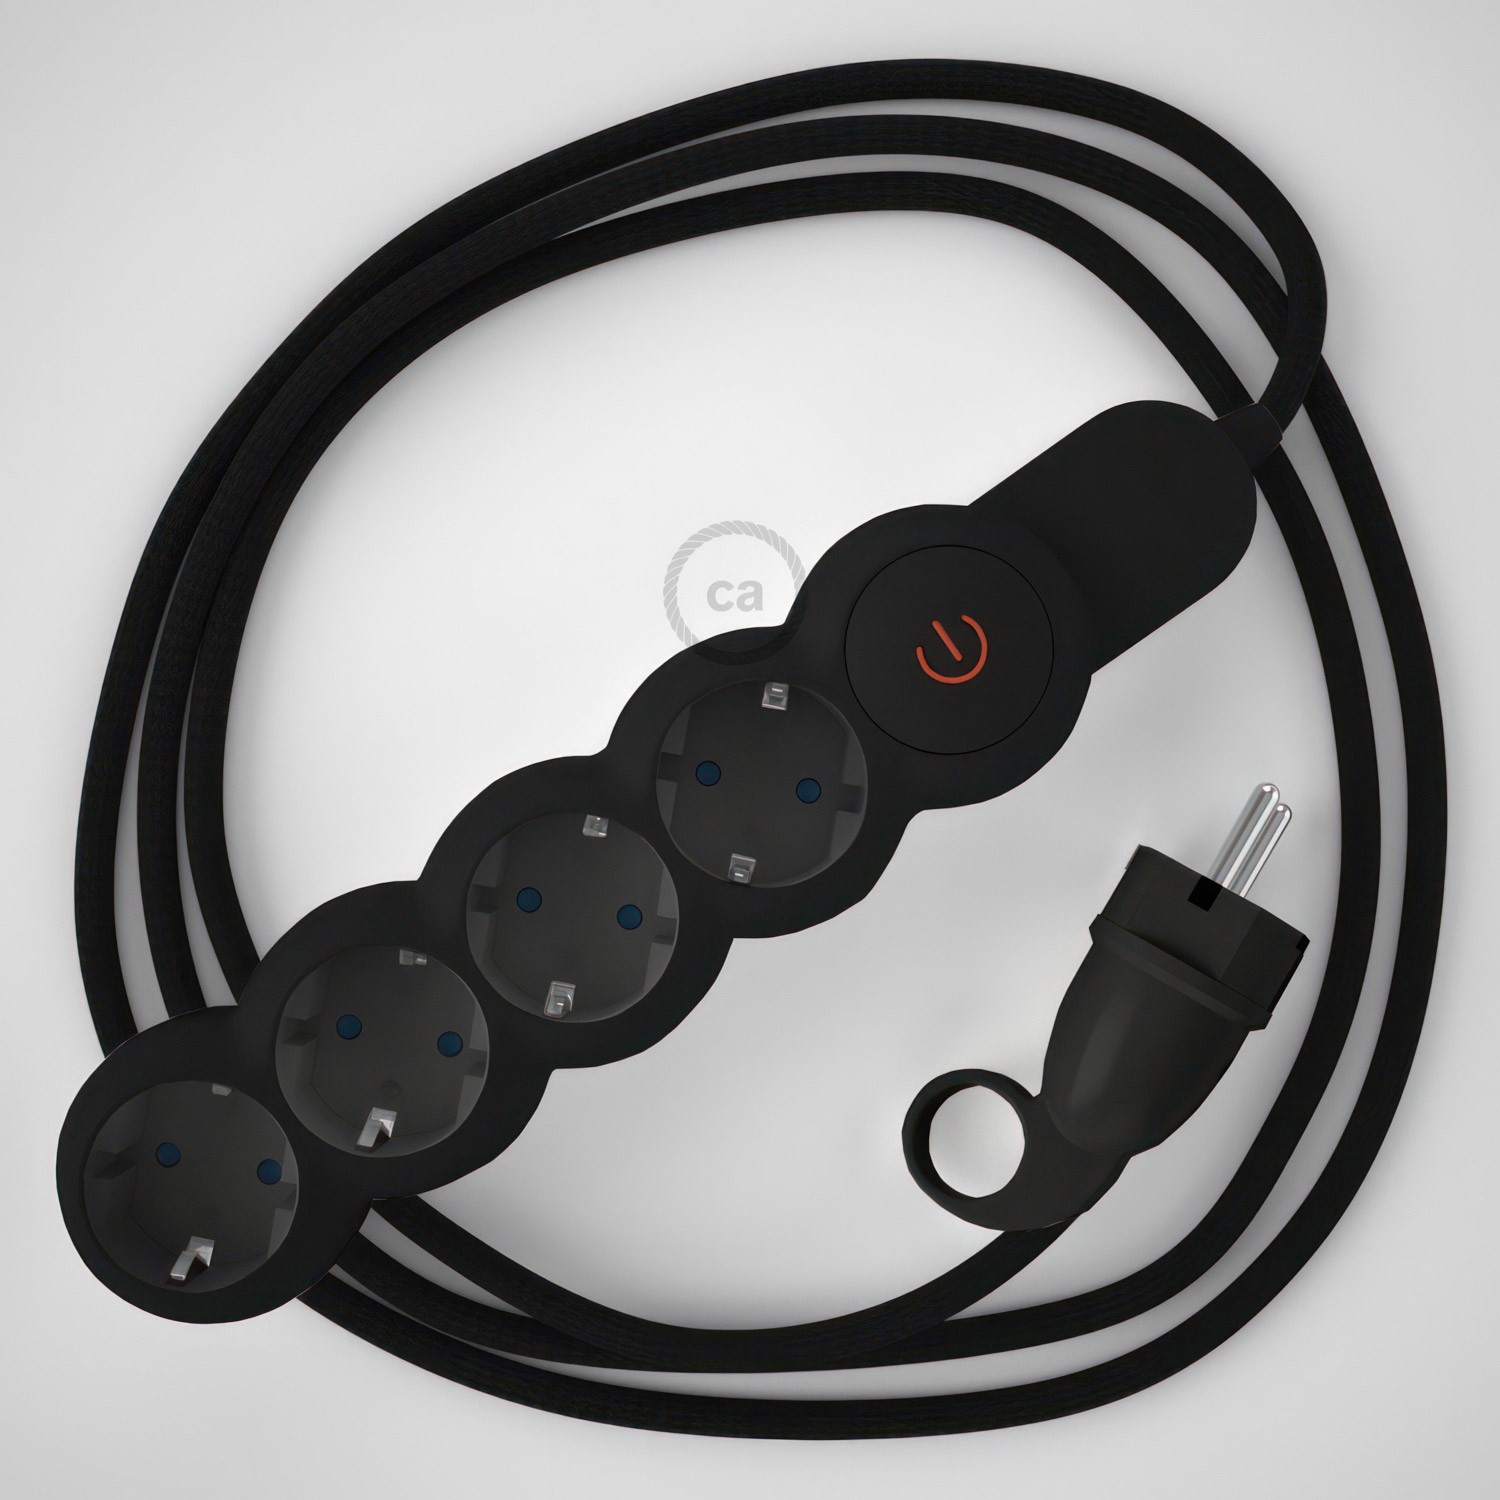 Razdelilnik z električnim kablom, prekrit s črnim RM04 blagom in udobnim šuko vtikačem